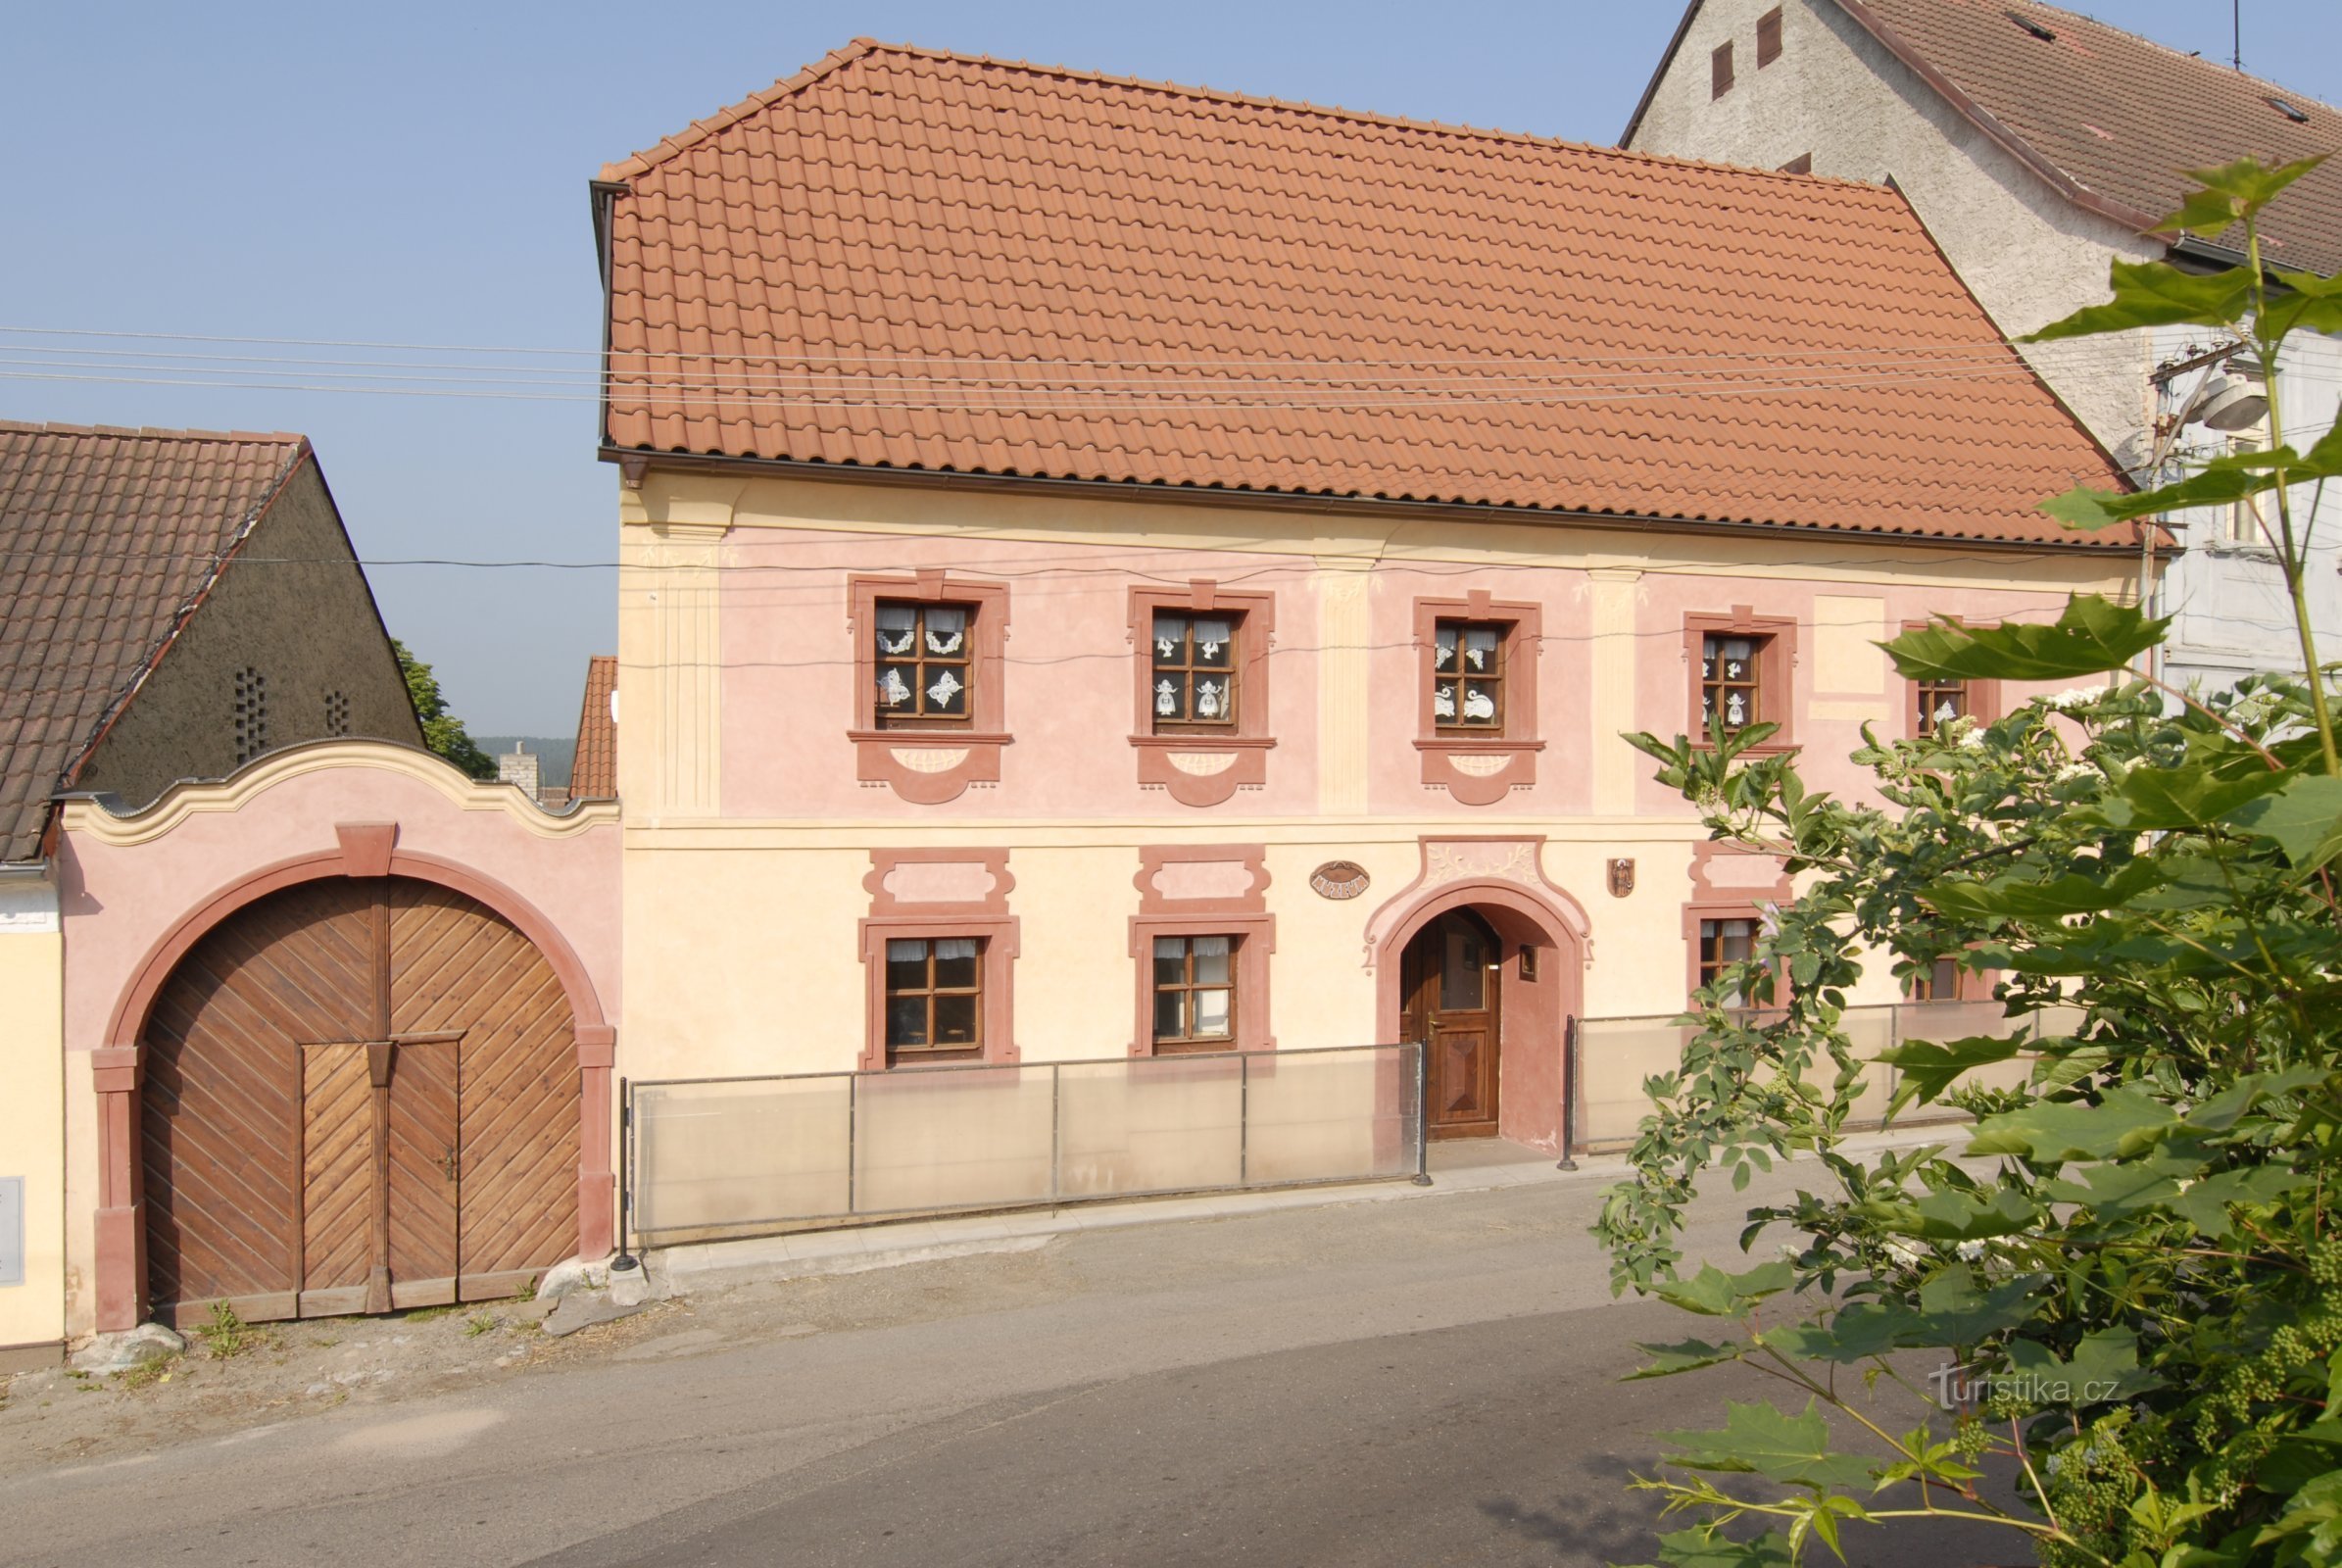 Muzeul Štěpánovsé